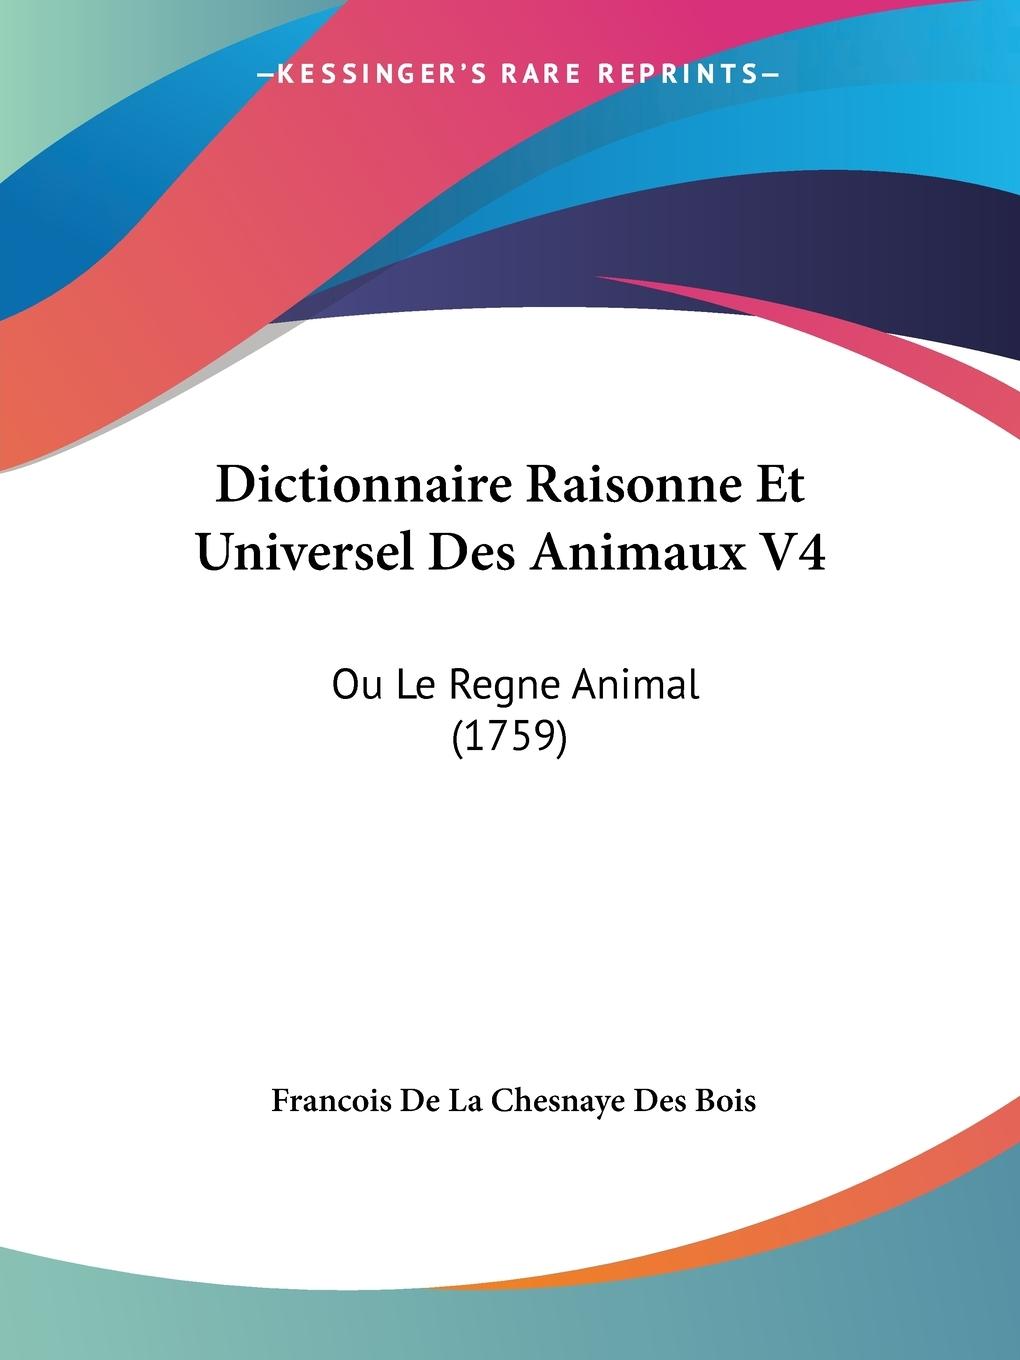 Dictionnaire Raisonne Et Universel Des Animaux V4 - Bois, Francois De La Chesnaye Des